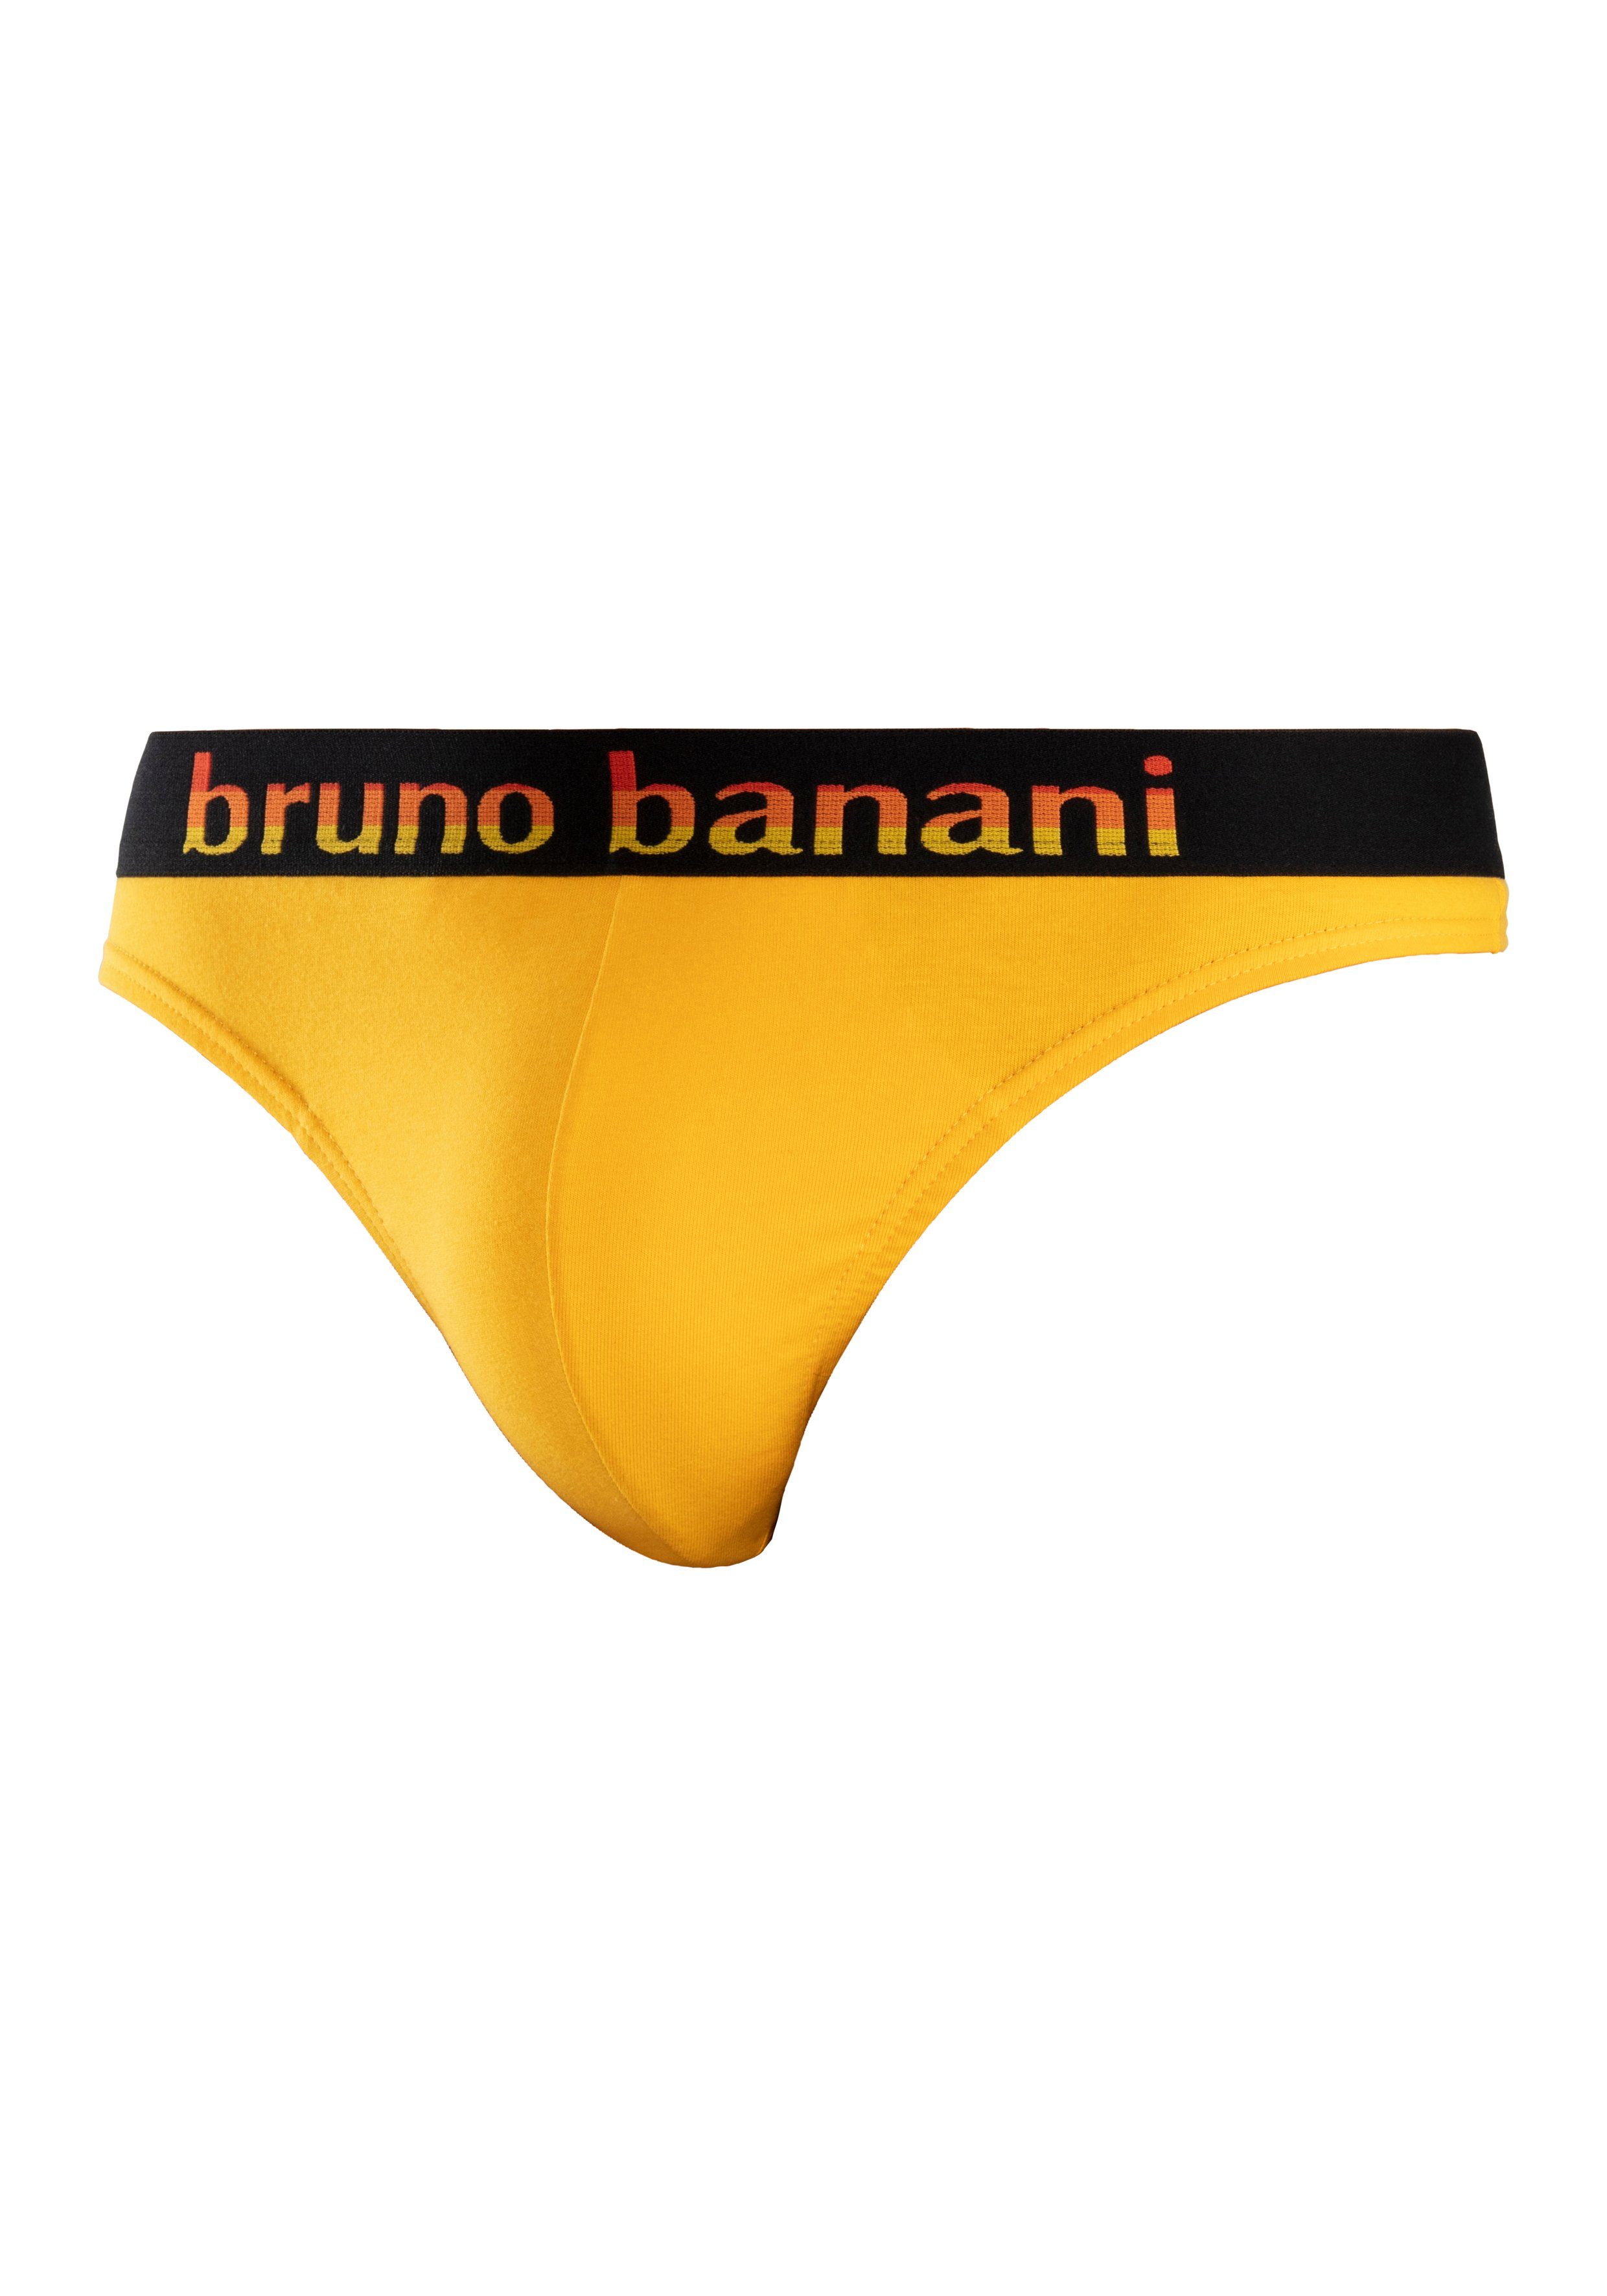 Bruno Banani String (Packung, 5-St) mint, Streifen schwarz Logo gelb, Webbund pink, mit blau